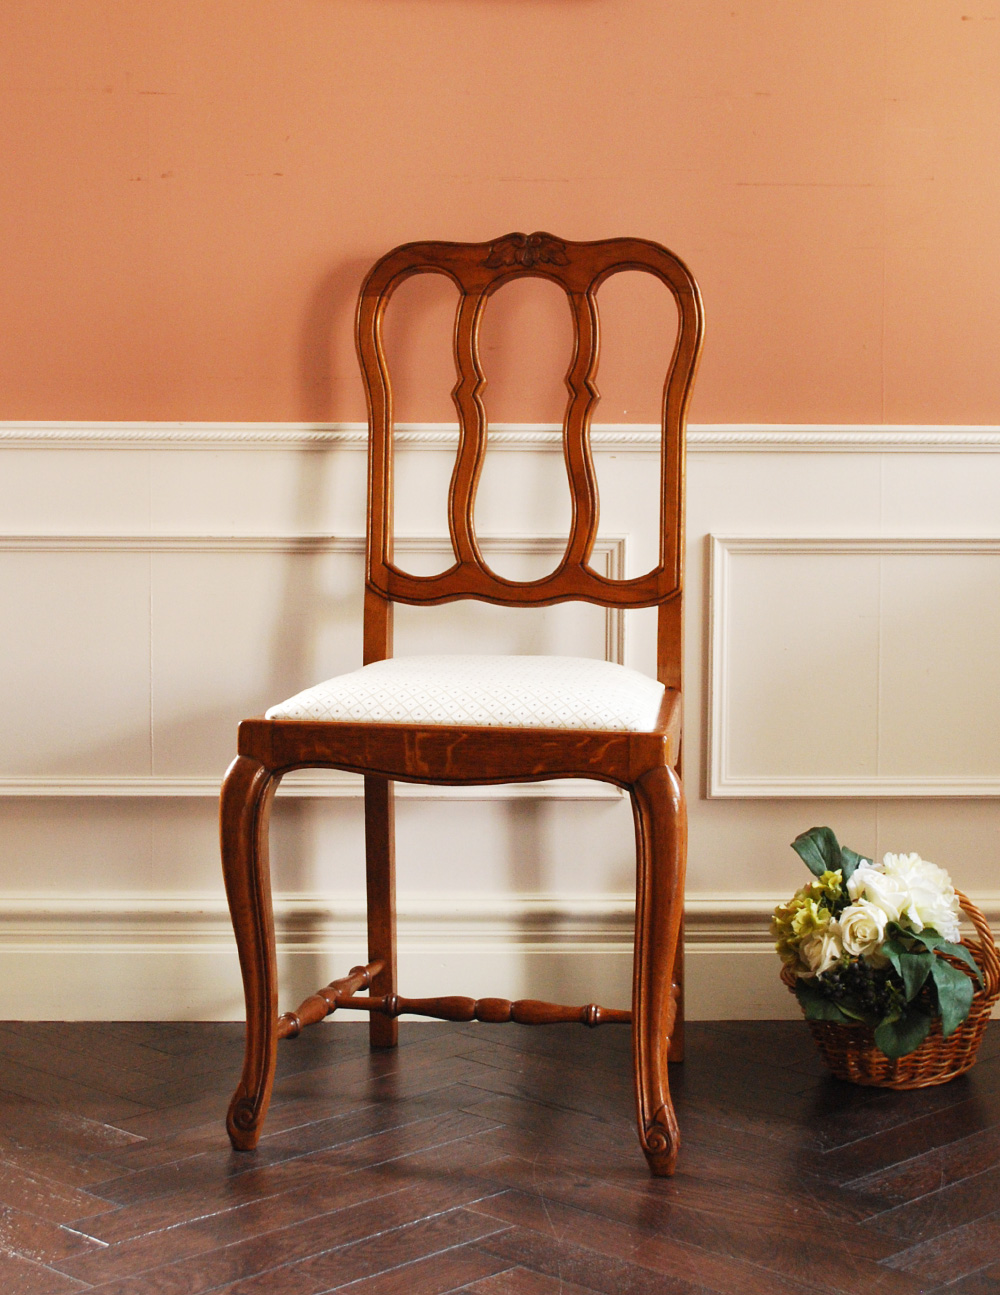 装飾がキレイなフランスの椅子、アンティークダイニングチェア (j-551-c)